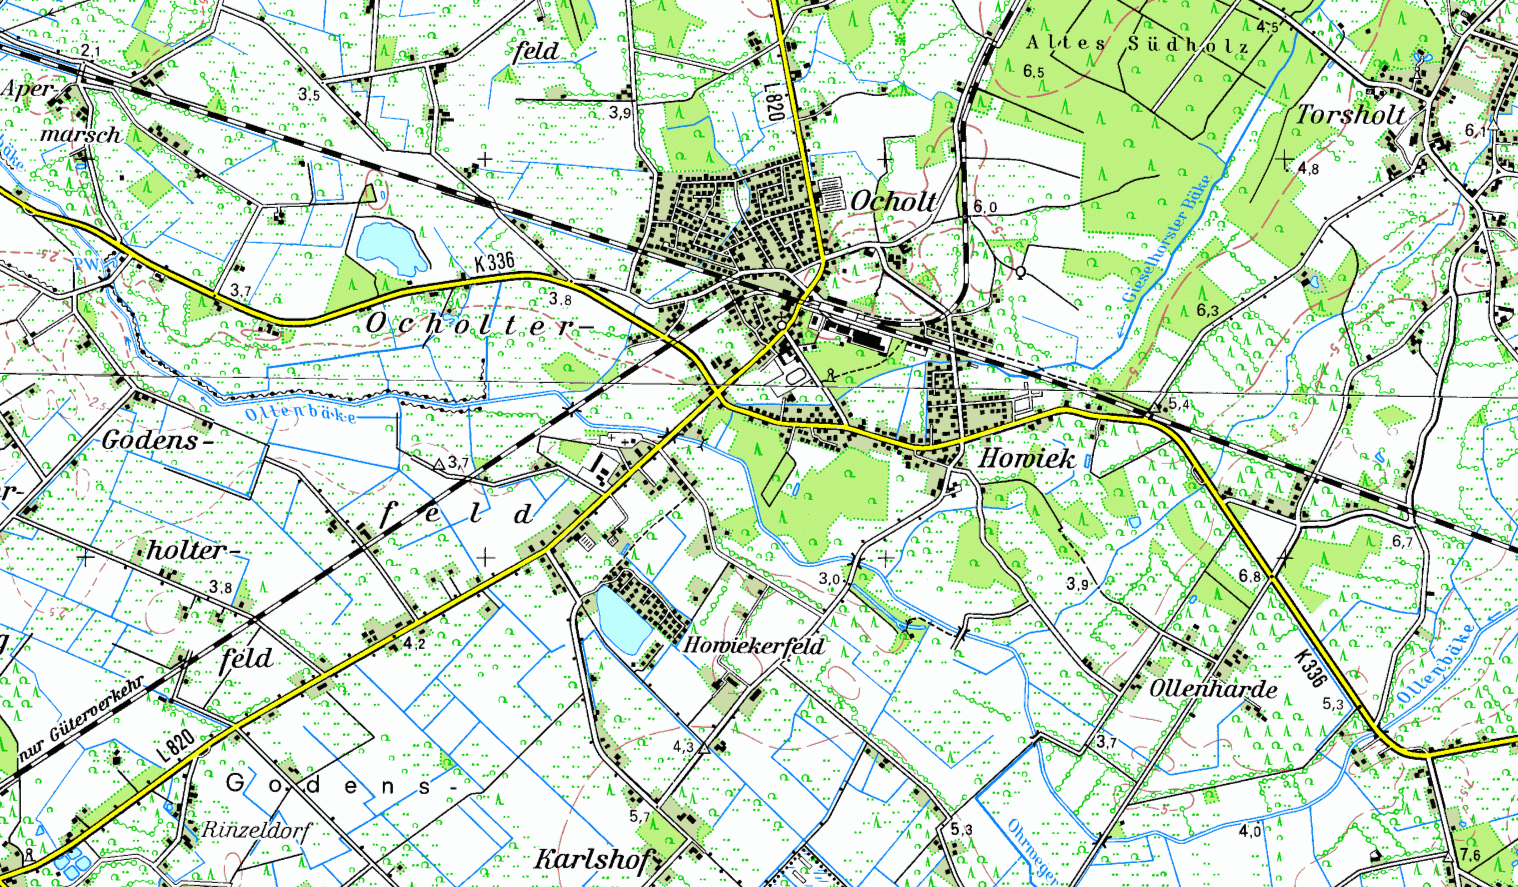 Topographische Karte von Howiek-Ocholt (TK50-1998)